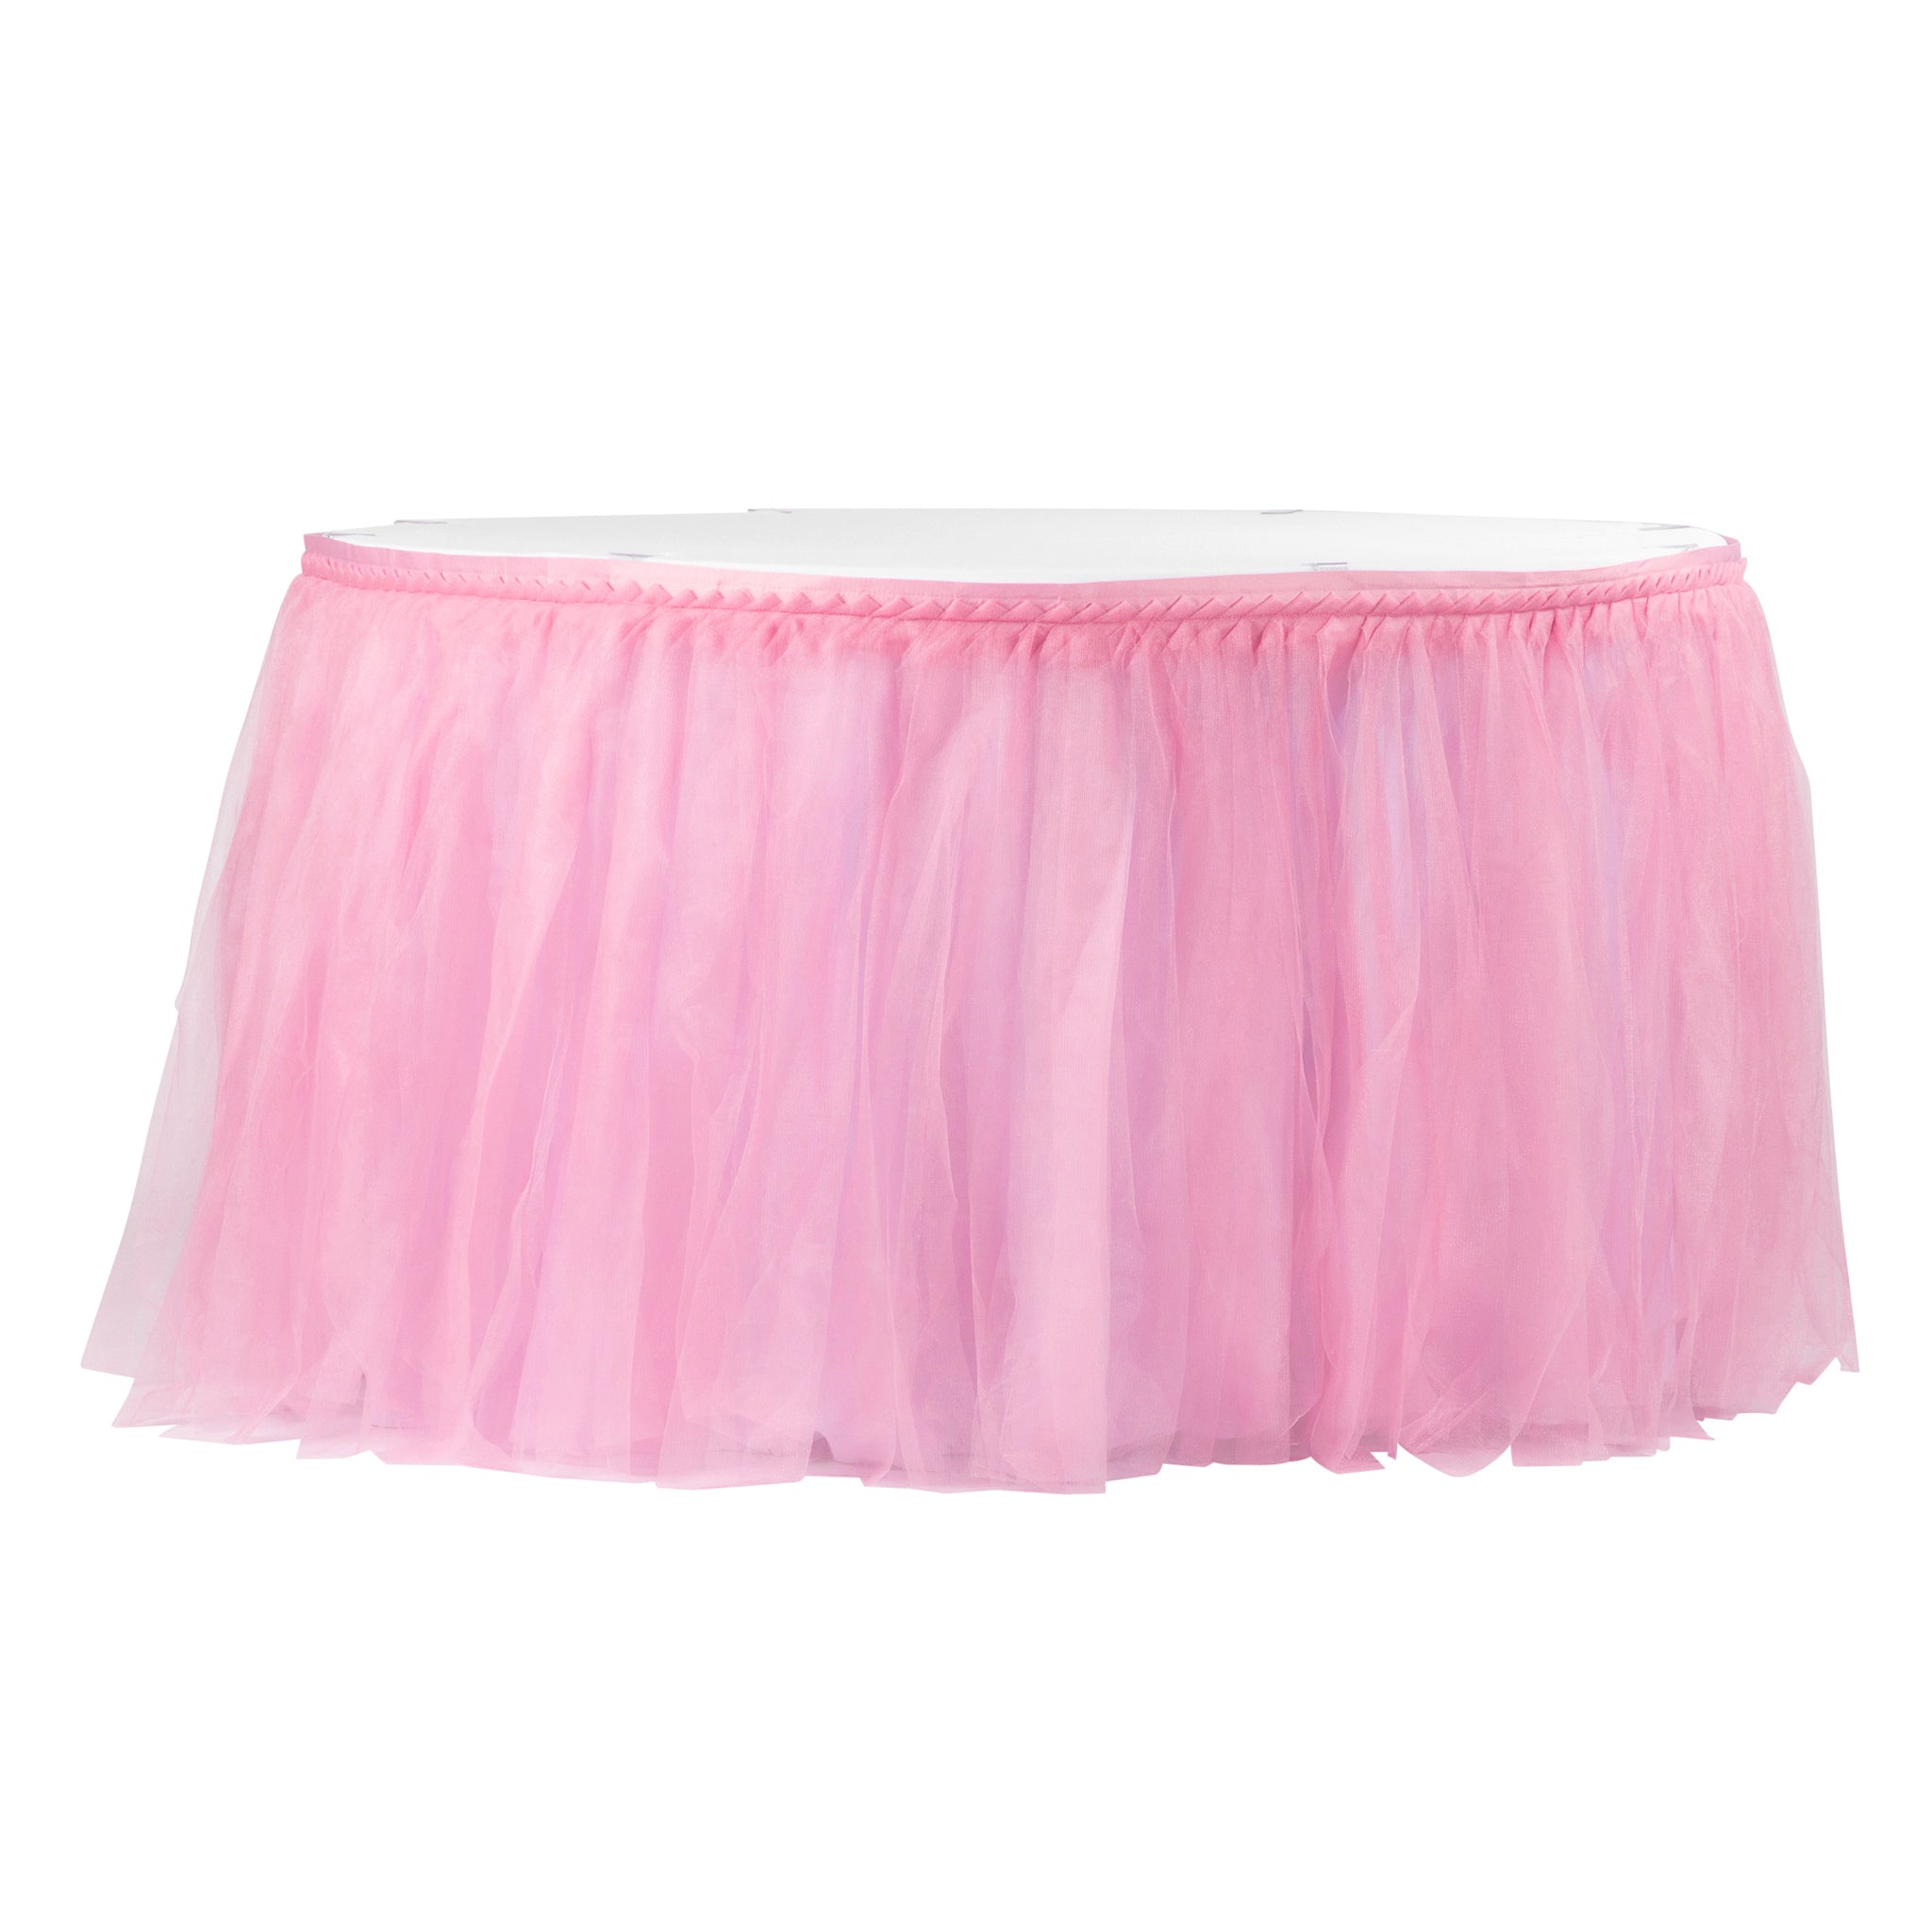 Tulle Tutu 17ft Table Skirt Pink Cv Linens